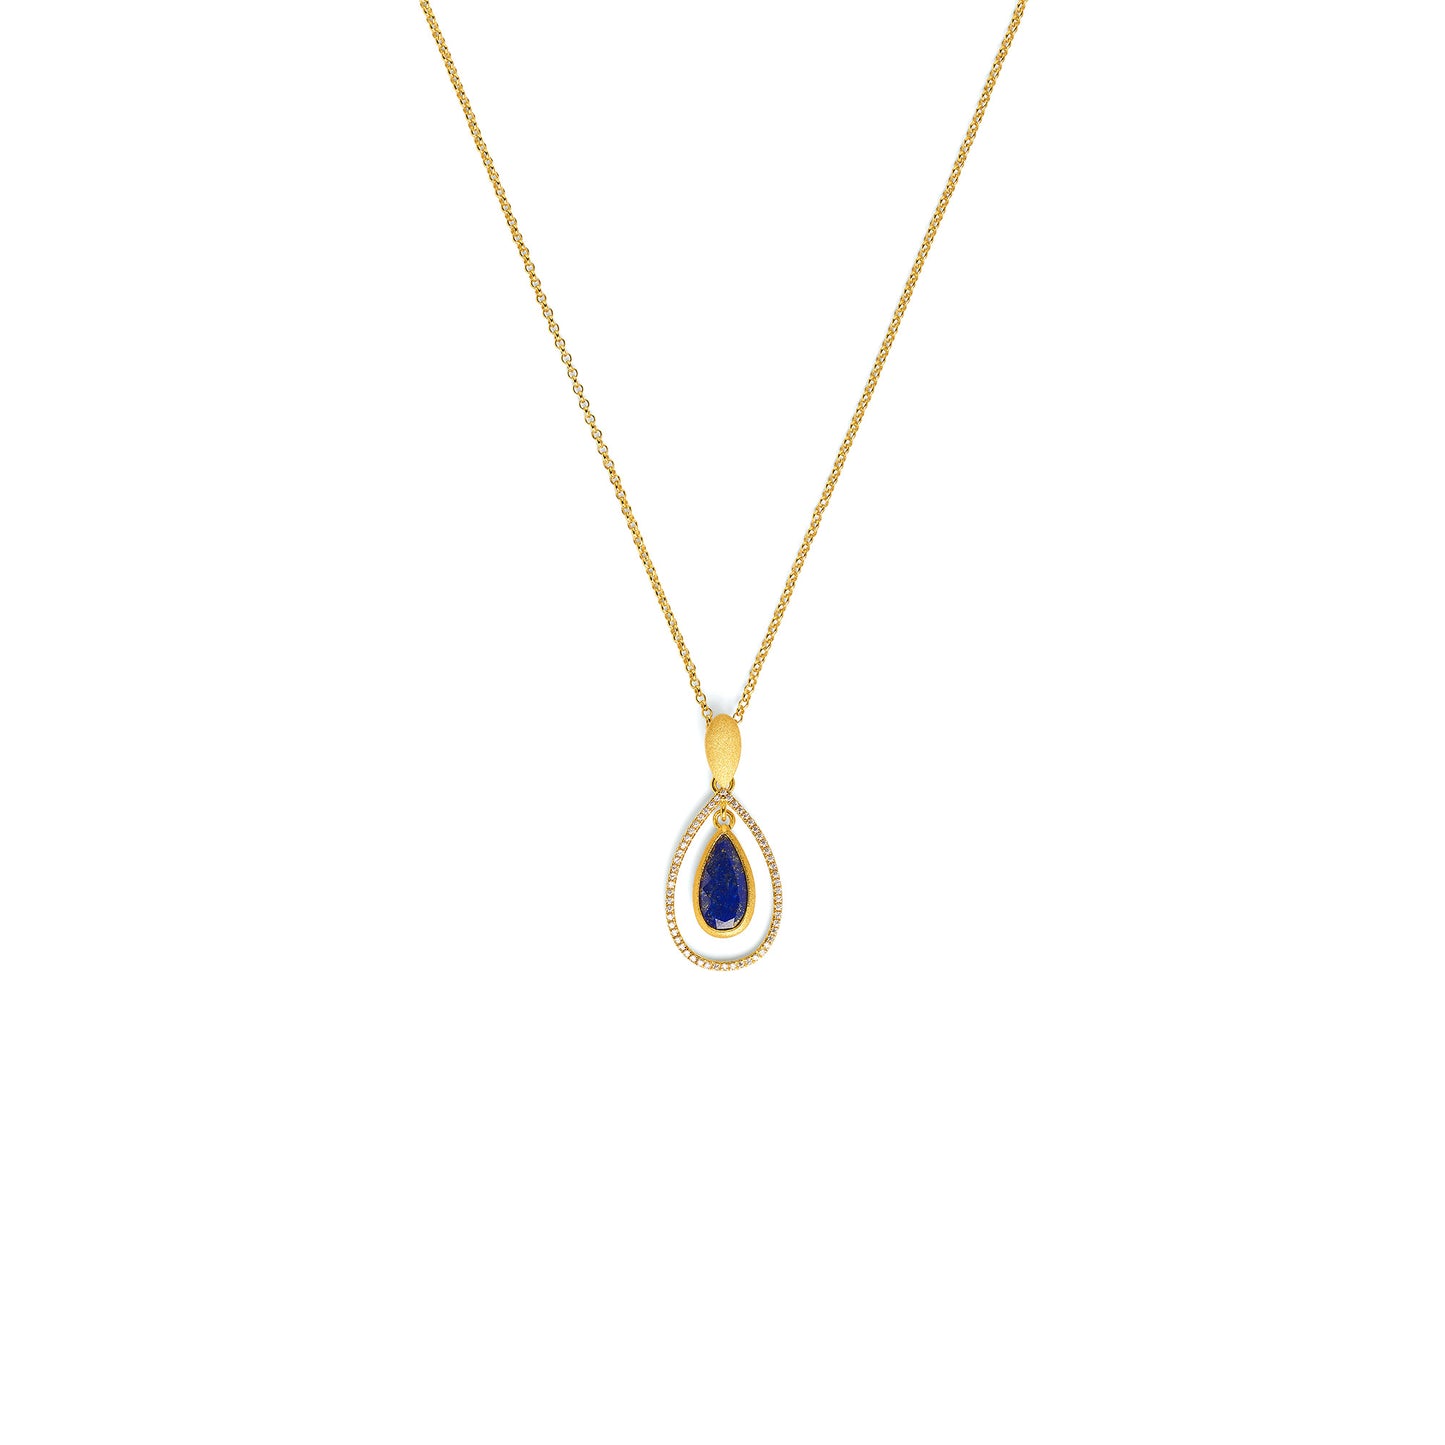 Bernd Wolf Collection "Venezia" Blue Lapis Necklace (Sm)